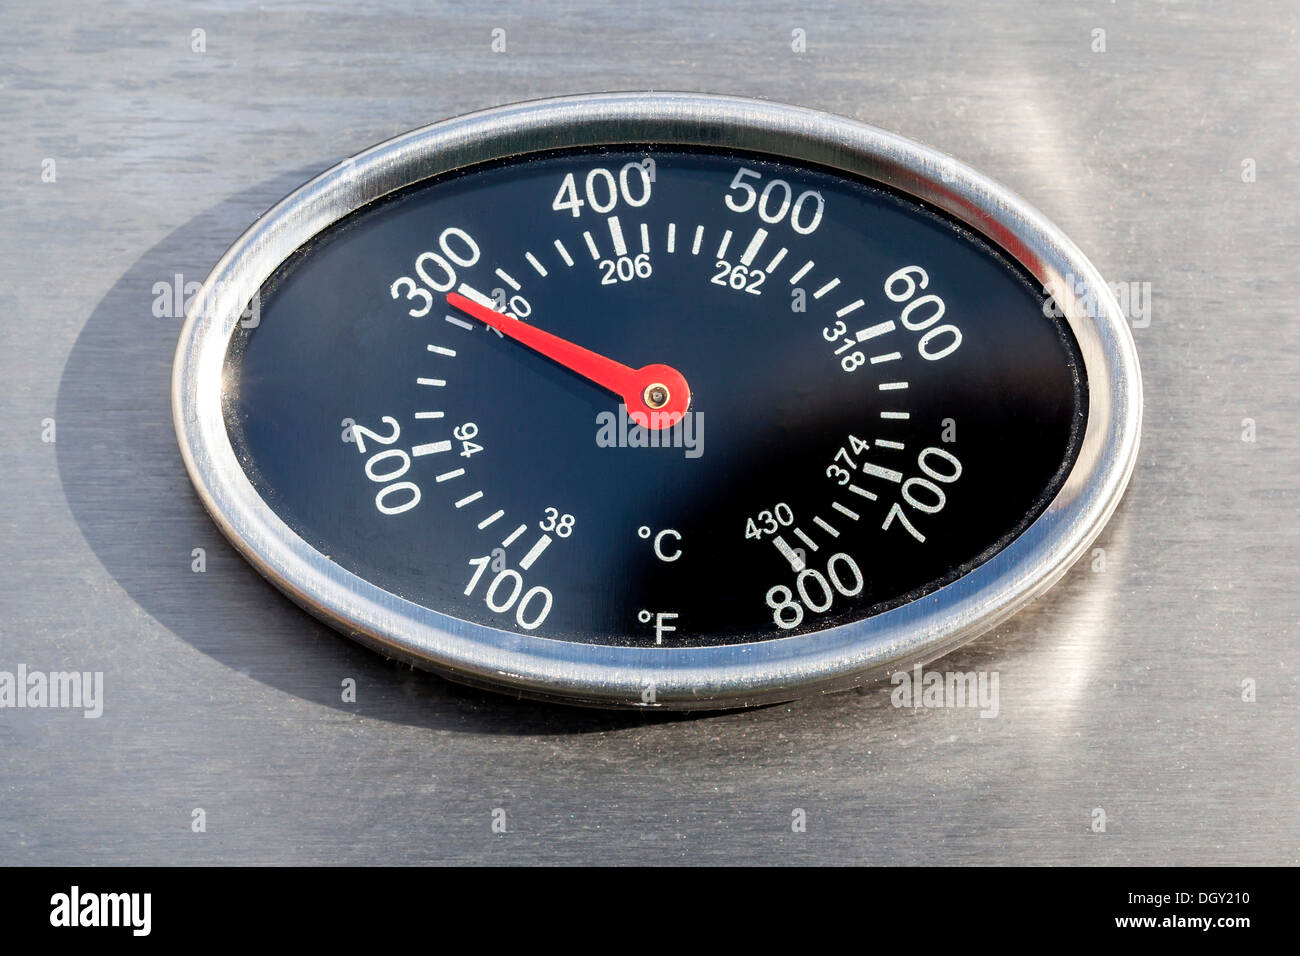 Termómetro, la visualización de la temperatura en grados Fahrenheit y Celsius o centígrados, en una parrilla de gas, Alemania Foto de stock